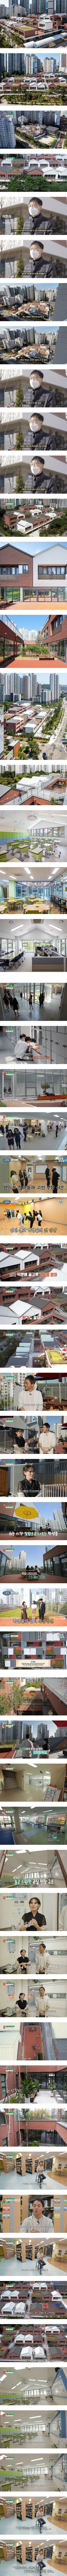 건축 대상 받았다는 서울의 한 중학교.jpg